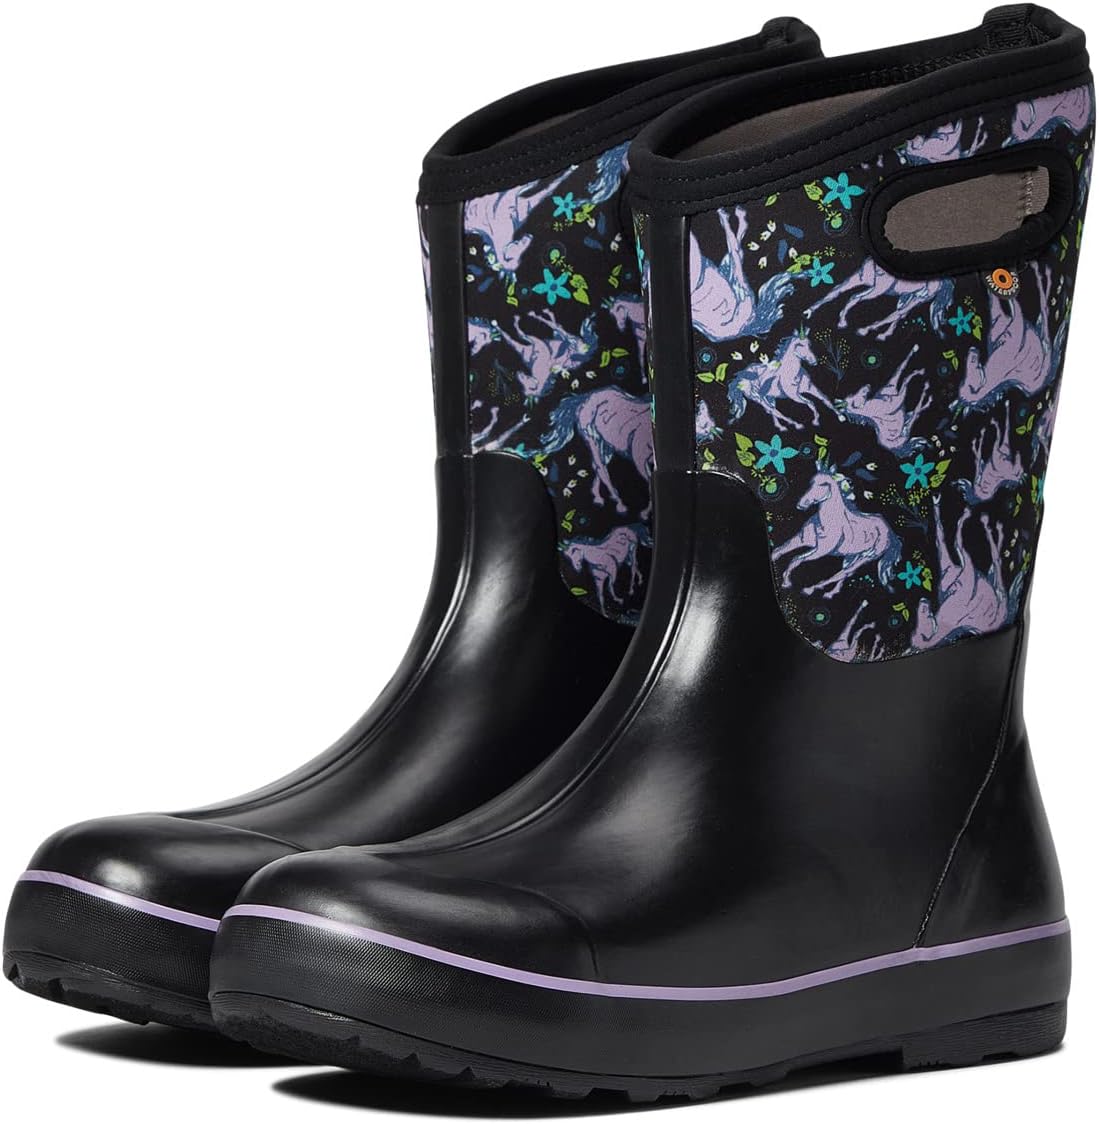 Зимние ботинки Classic II Unicorn Awesome Bogs, цвет Black Multi